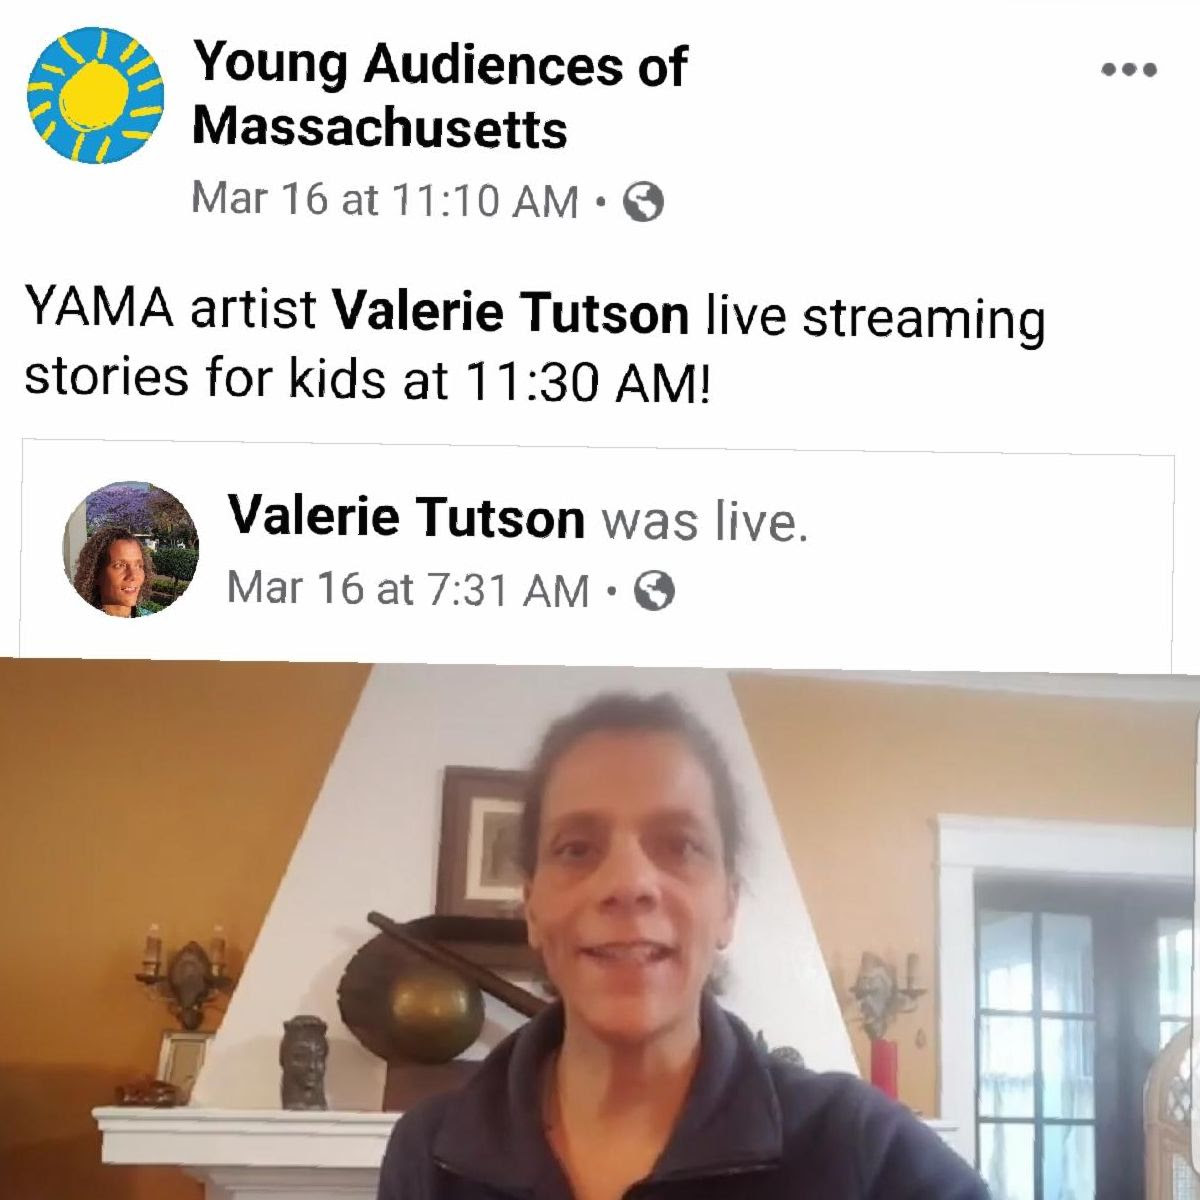 Facebook post of YAMA teaching artist Valerie Tutson live steaming storytelling